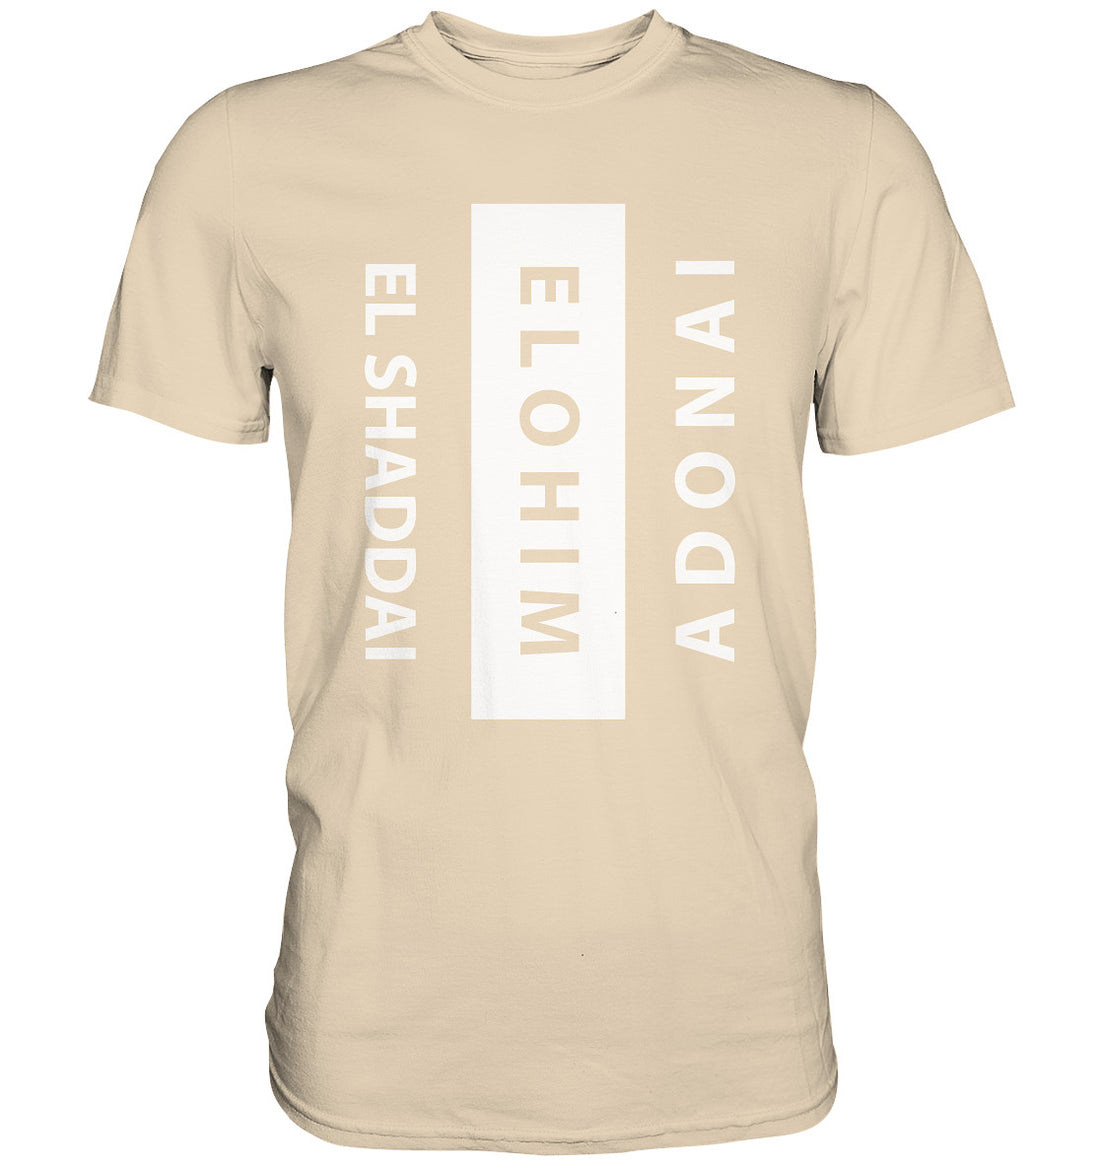 El Shaddai, Elohim, Adonai - Premium Shirt